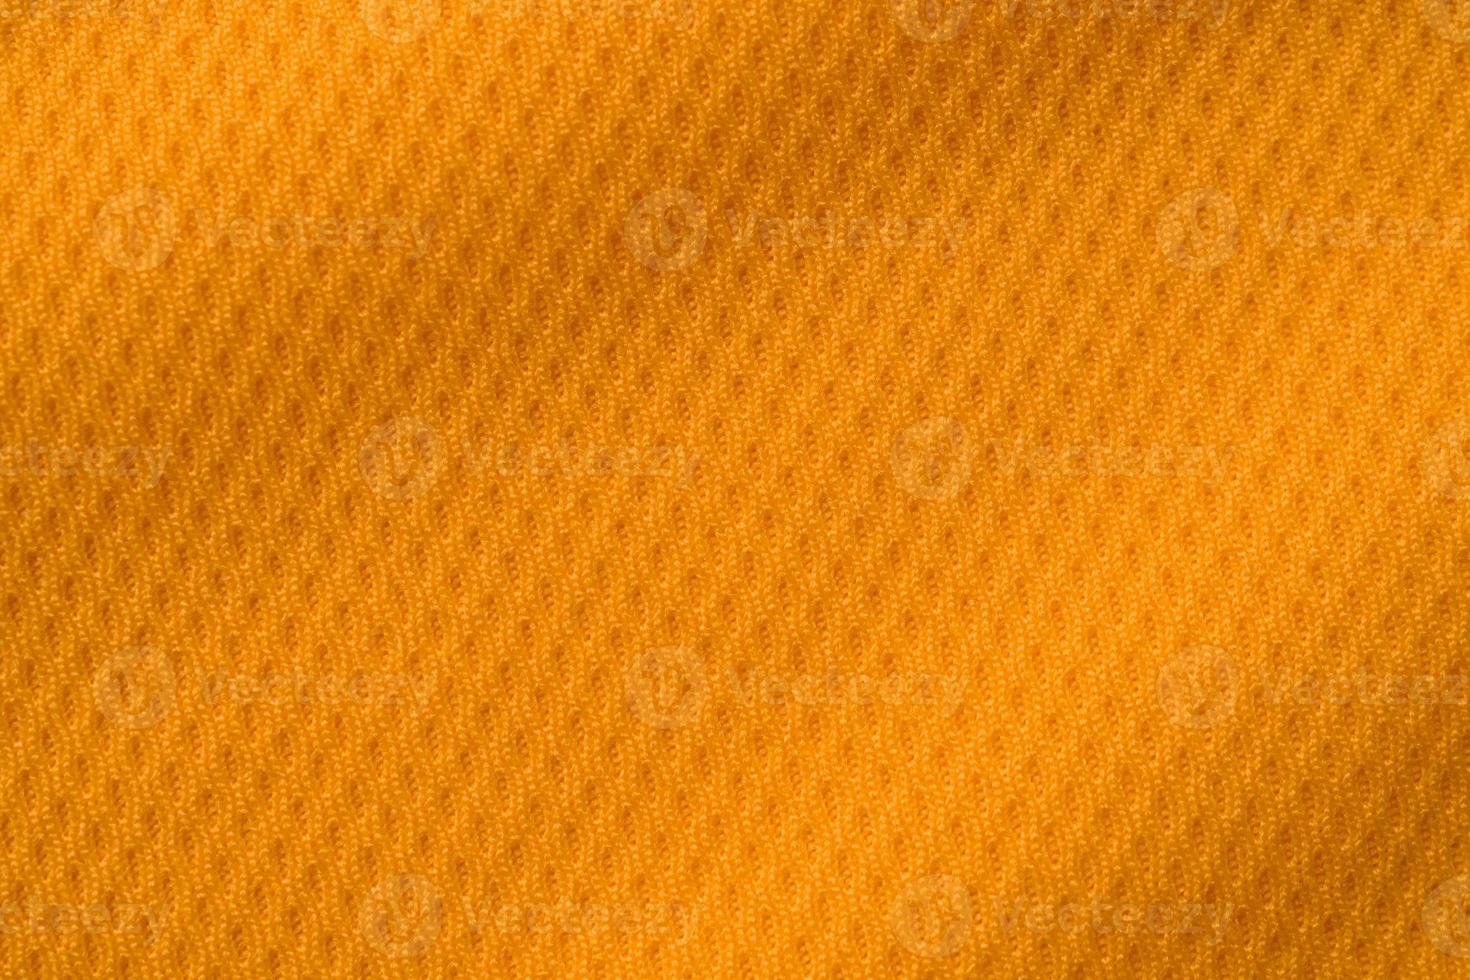 arancia colore gli sport capi di abbigliamento tessuto maglia calcio camicia struttura superiore Visualizza foto